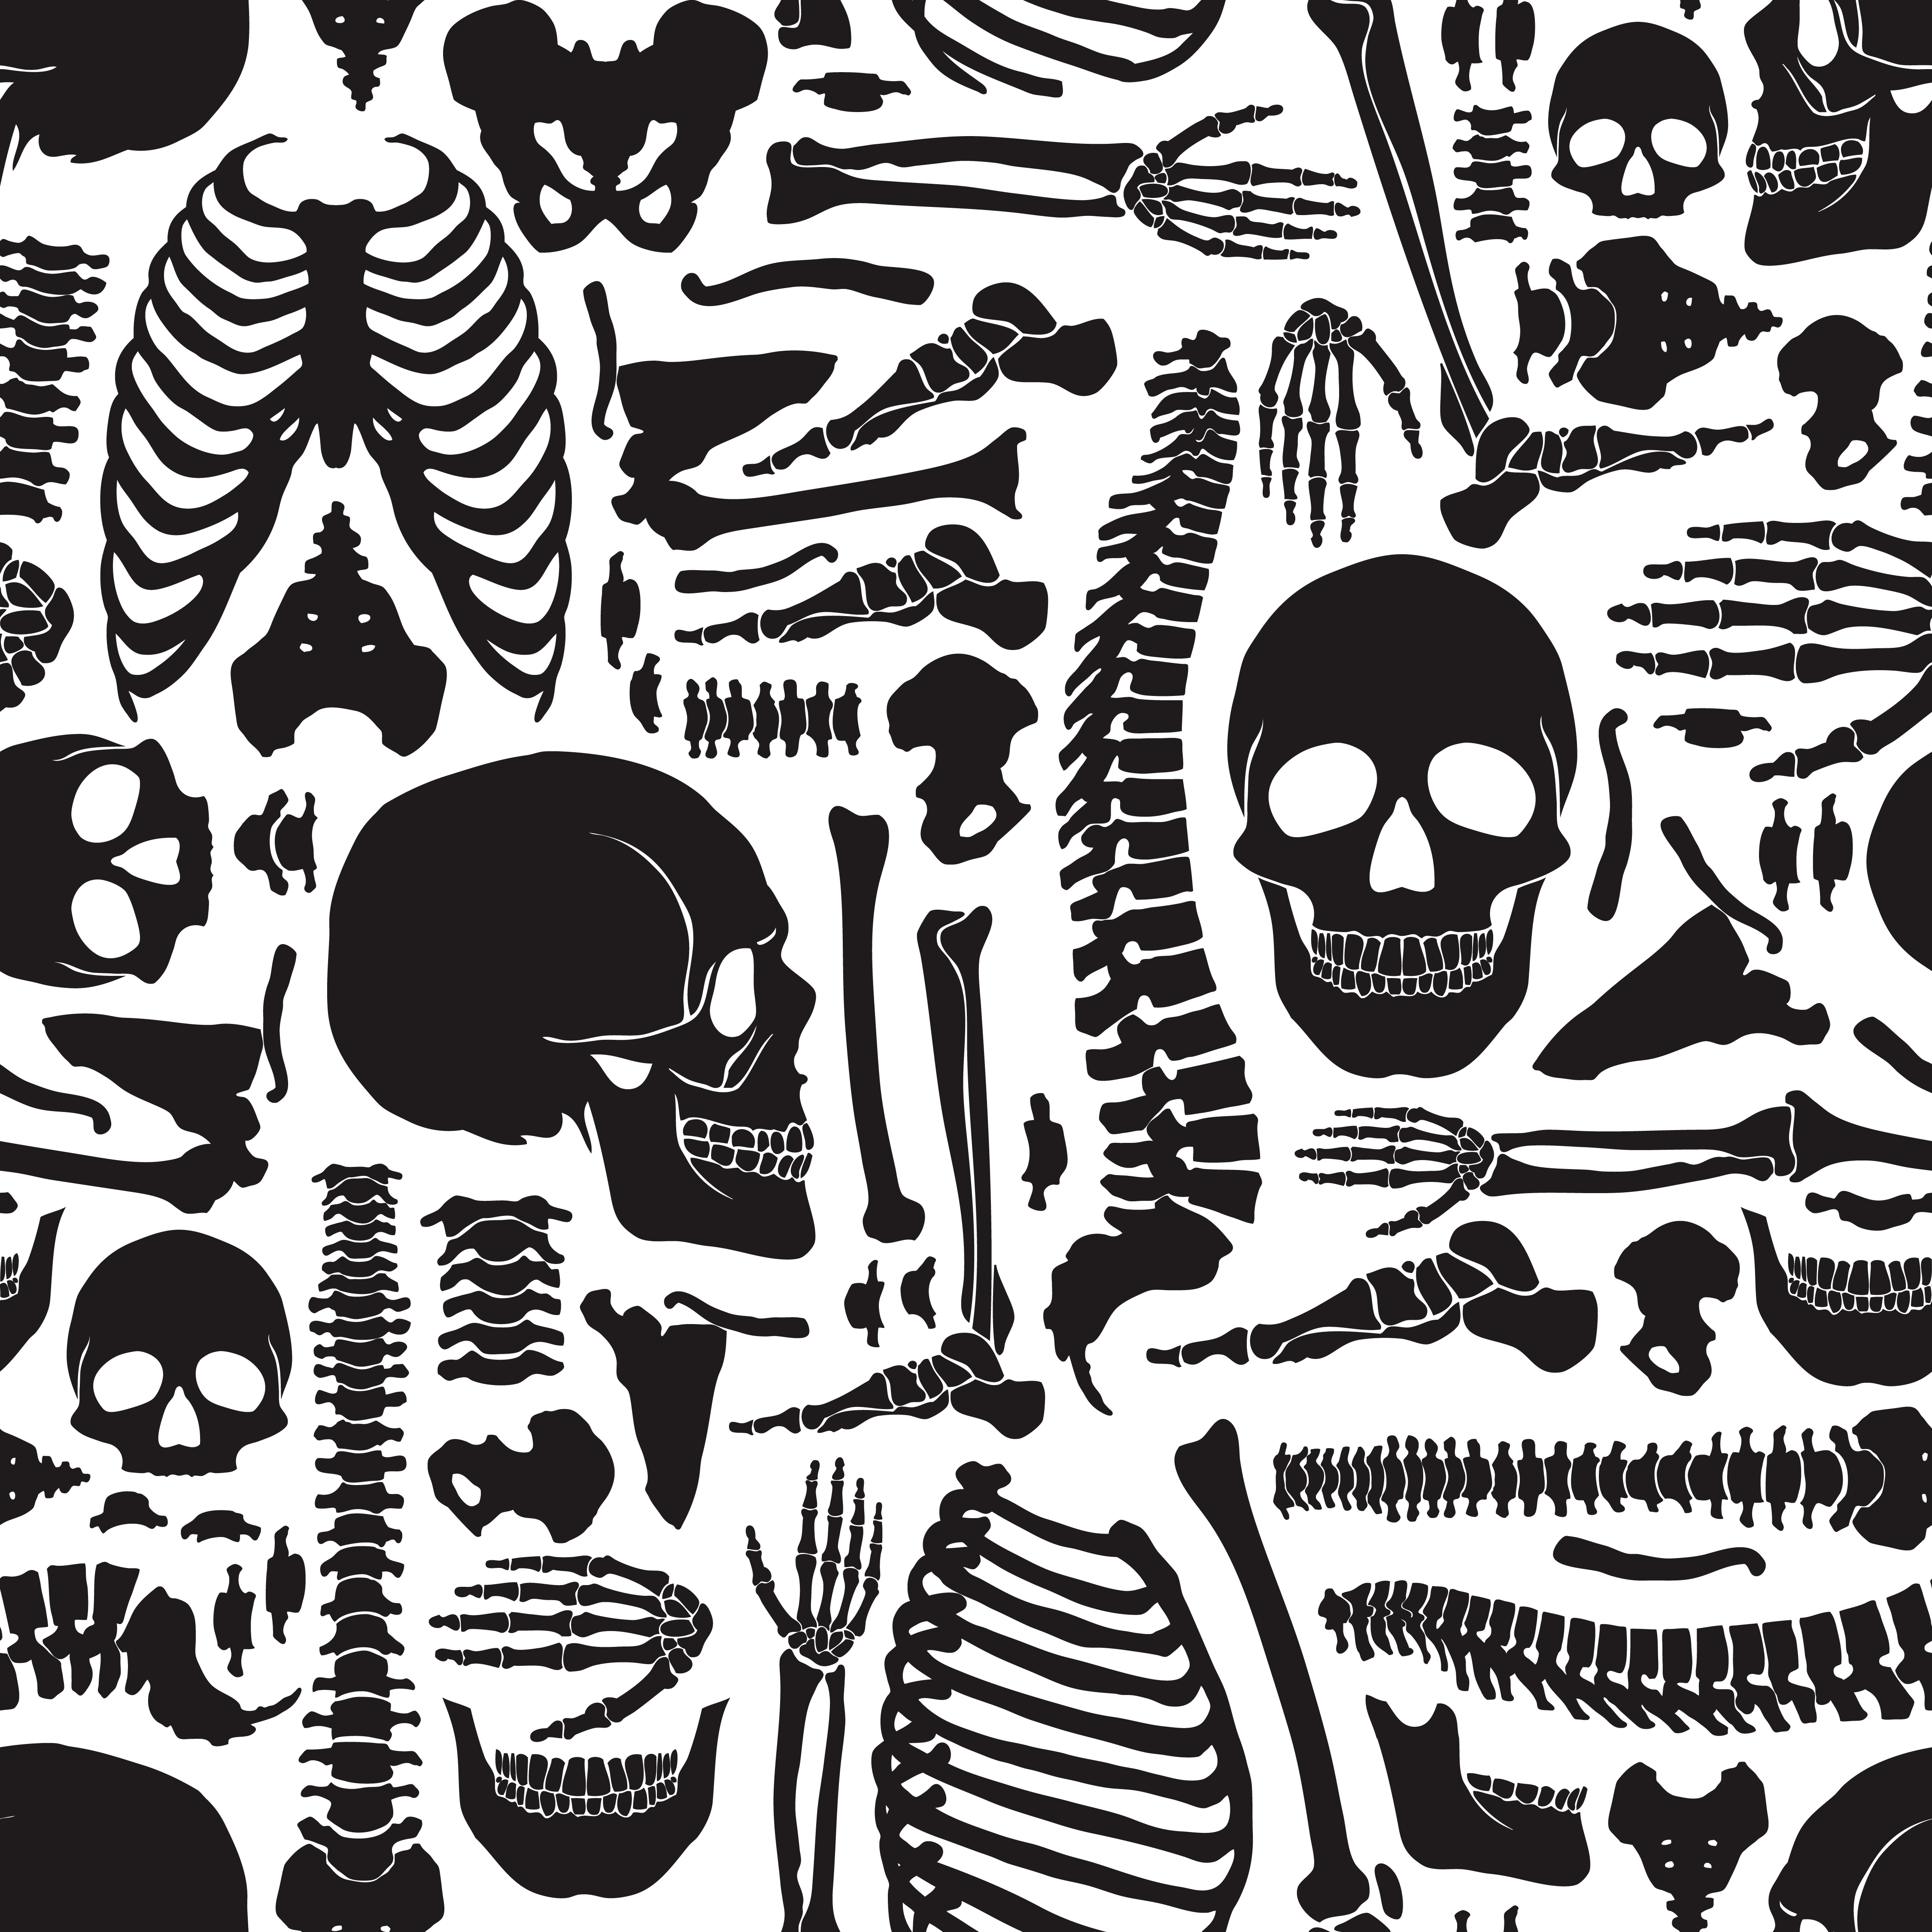 Download Human Bones Skeleton Pattern - Download Free Vectors, Clipart Graphics & Vector Art